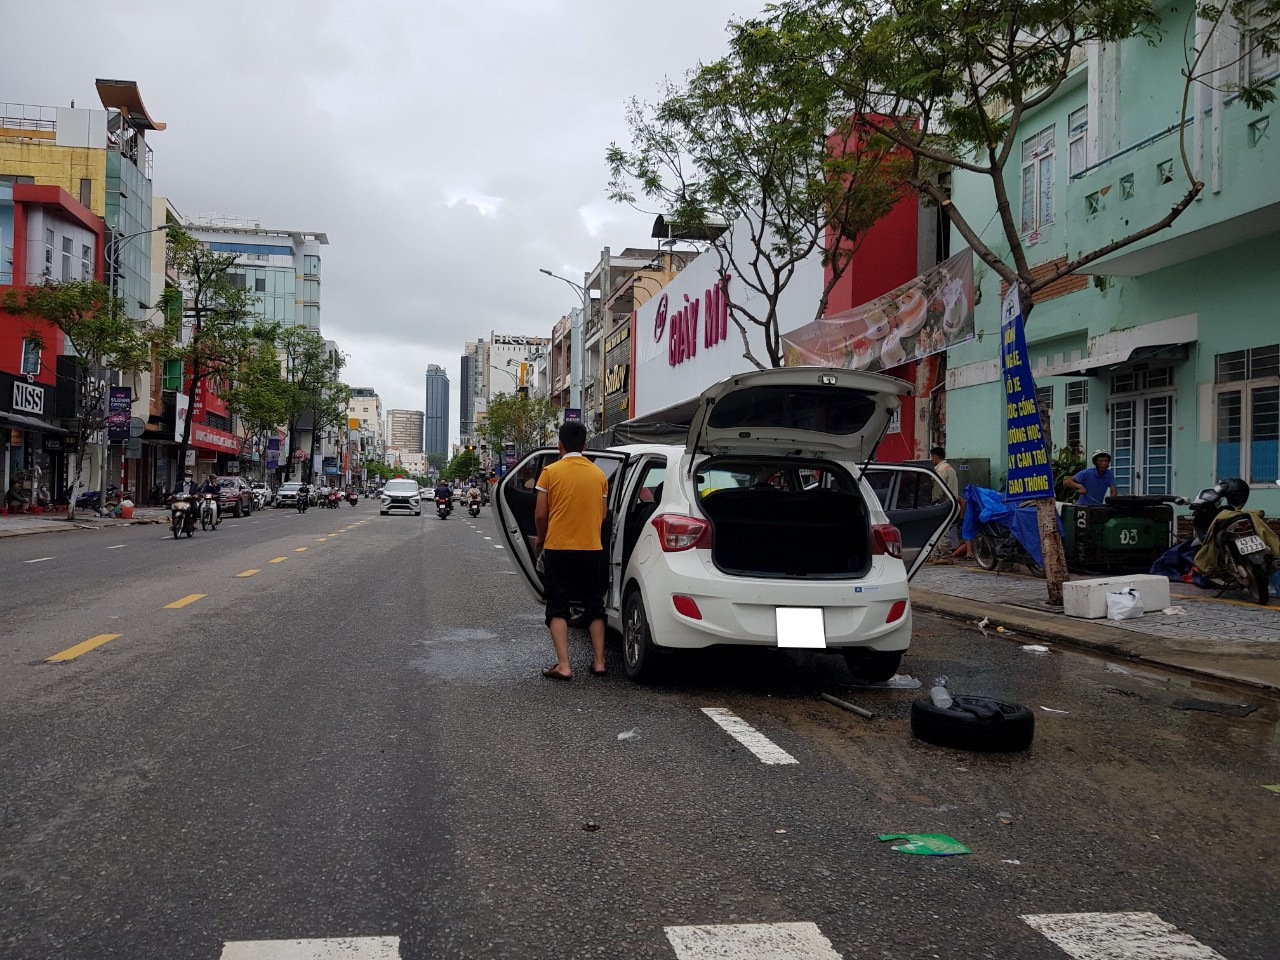 Hàng loạt ôtô hỏng bị bỏ lại trên đường sau trận ngập nặng tại Đà Nẵng